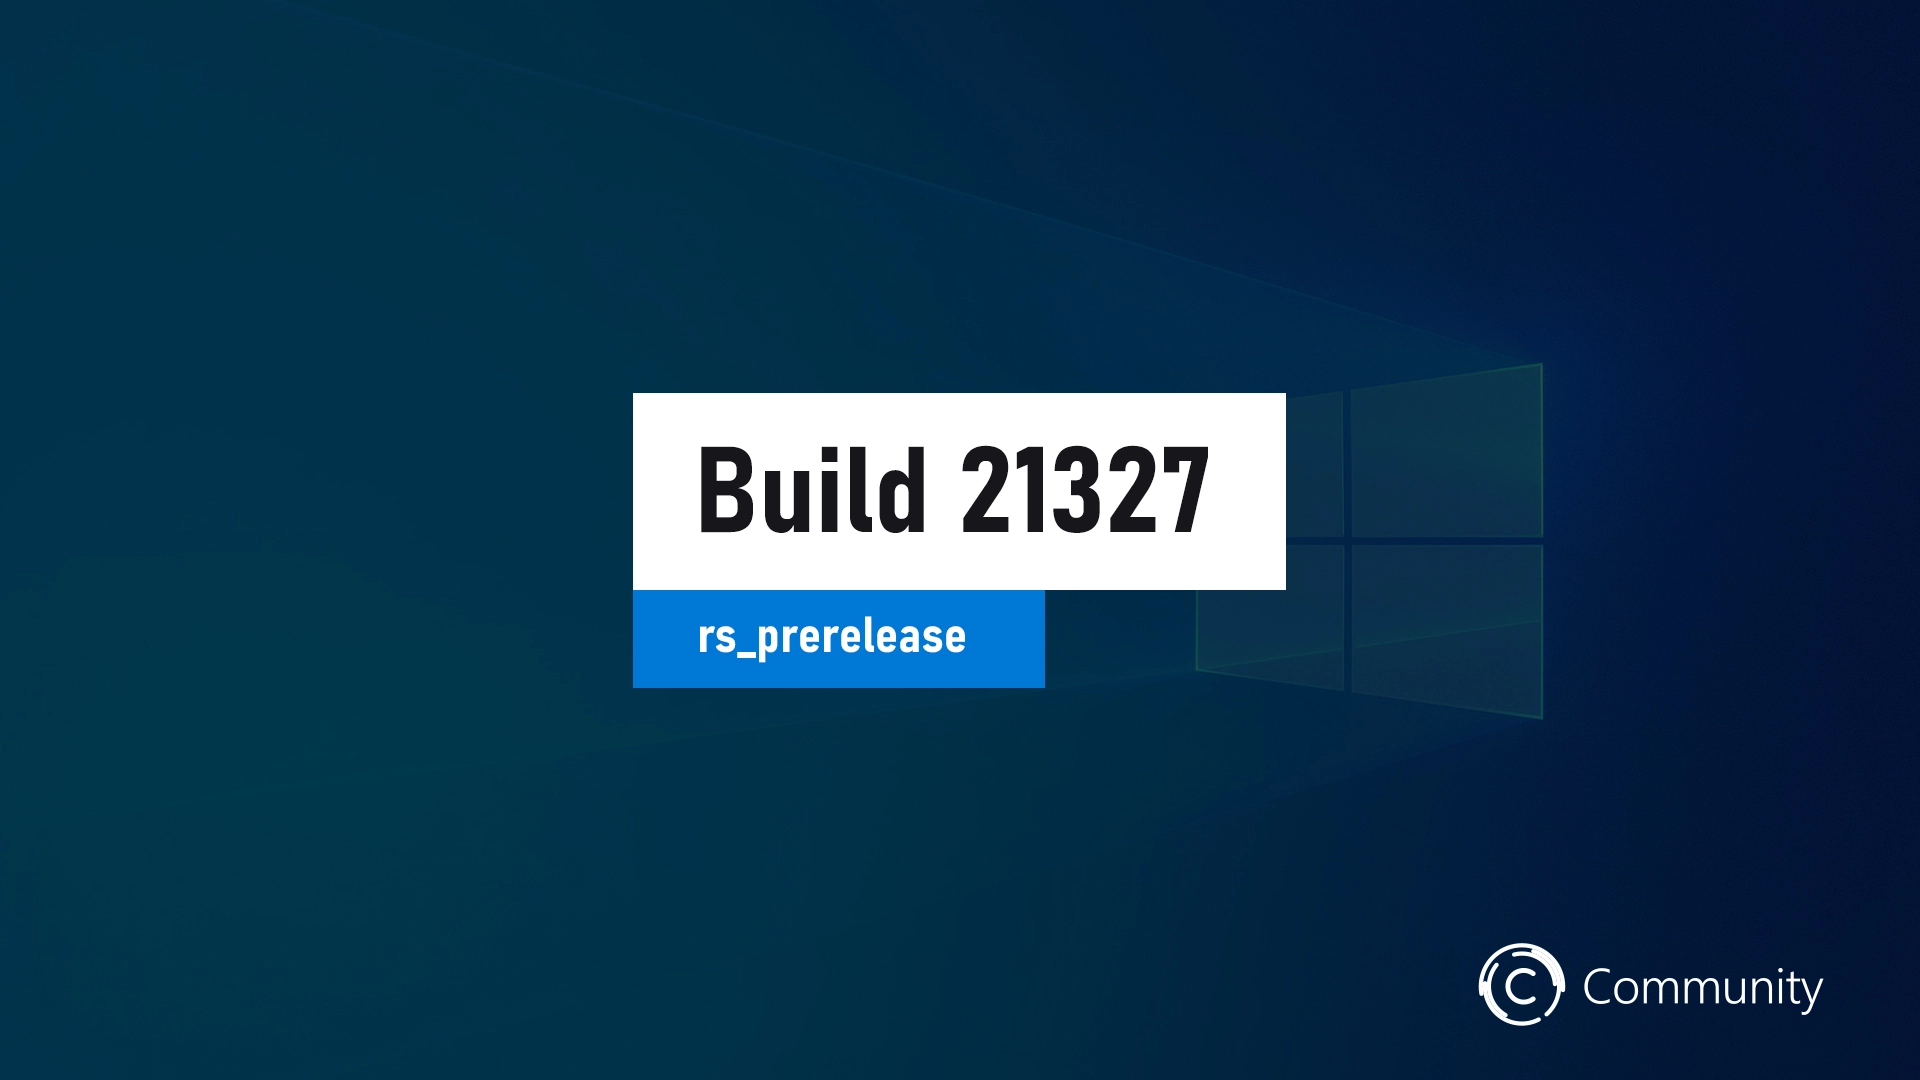 Windows 10 Build 21327 est disponible pour test et téléchargement